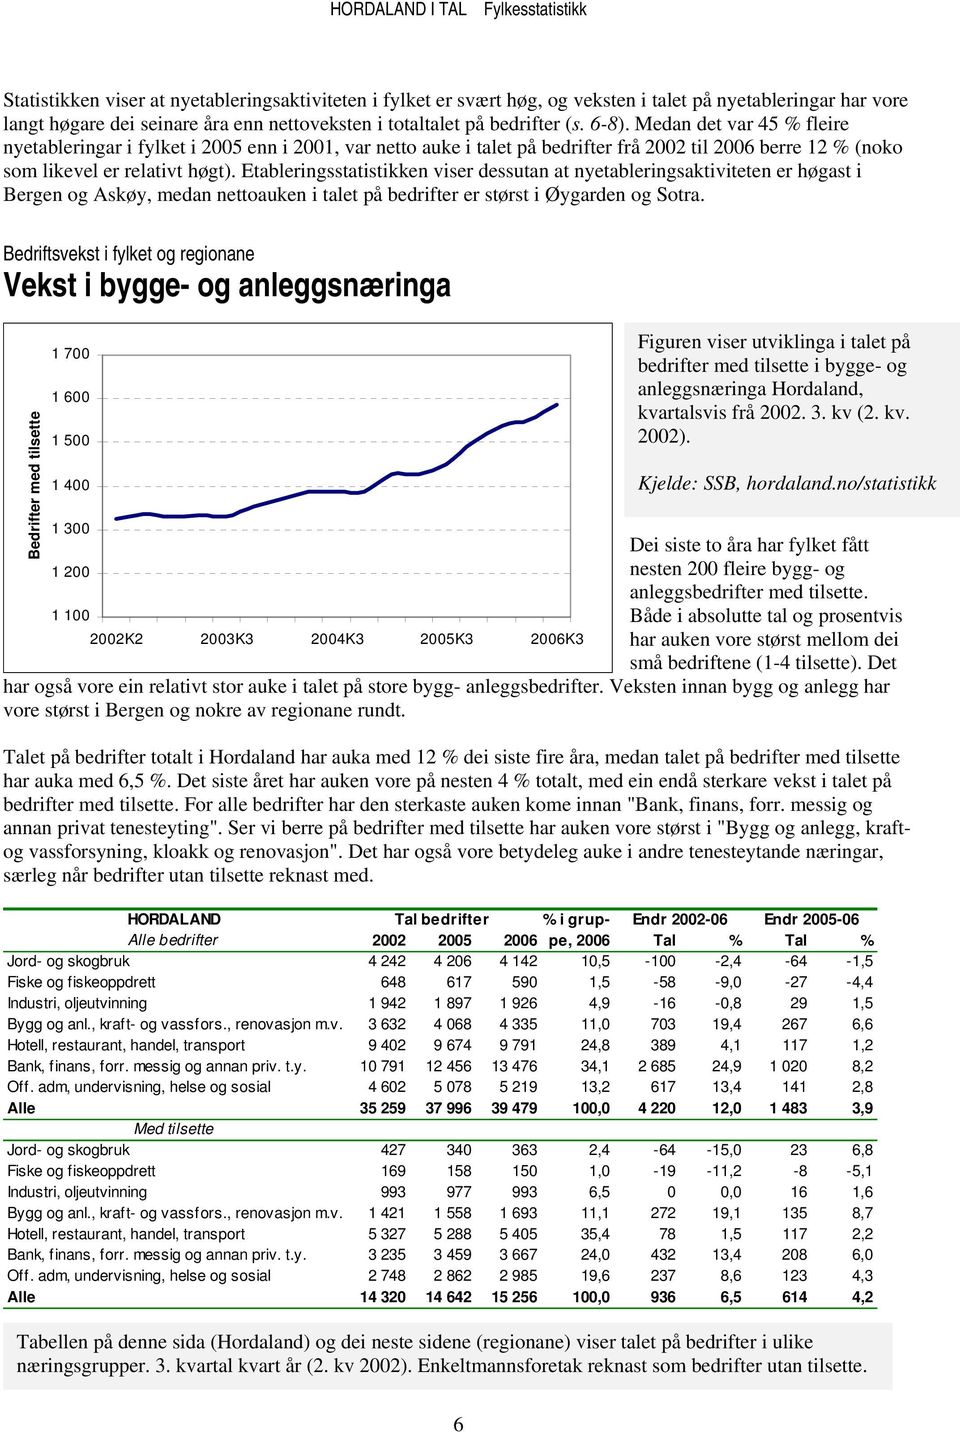 Etableringsstatistikken viser dessutan at nyetableringsaktiviteten er høgast i Bergen og Askøy, medan nettoauken i talet på bedrifter er størst i Øygarden og Sotra.